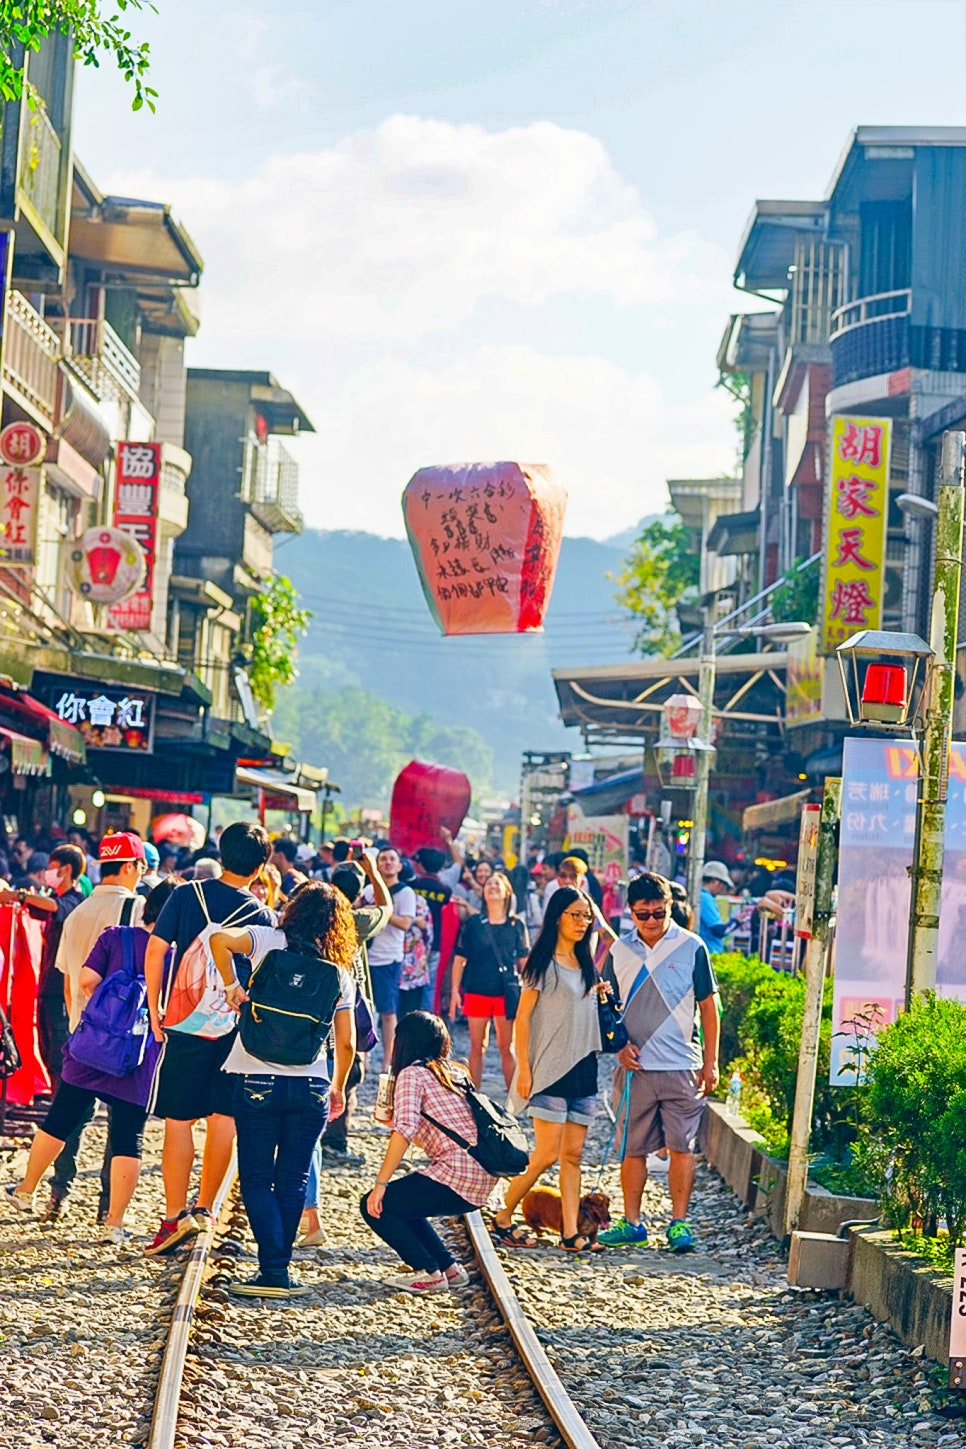 3박4일 대만여행 경비 타이베이 자유여행 일정 + 대만여행지원금 항공권